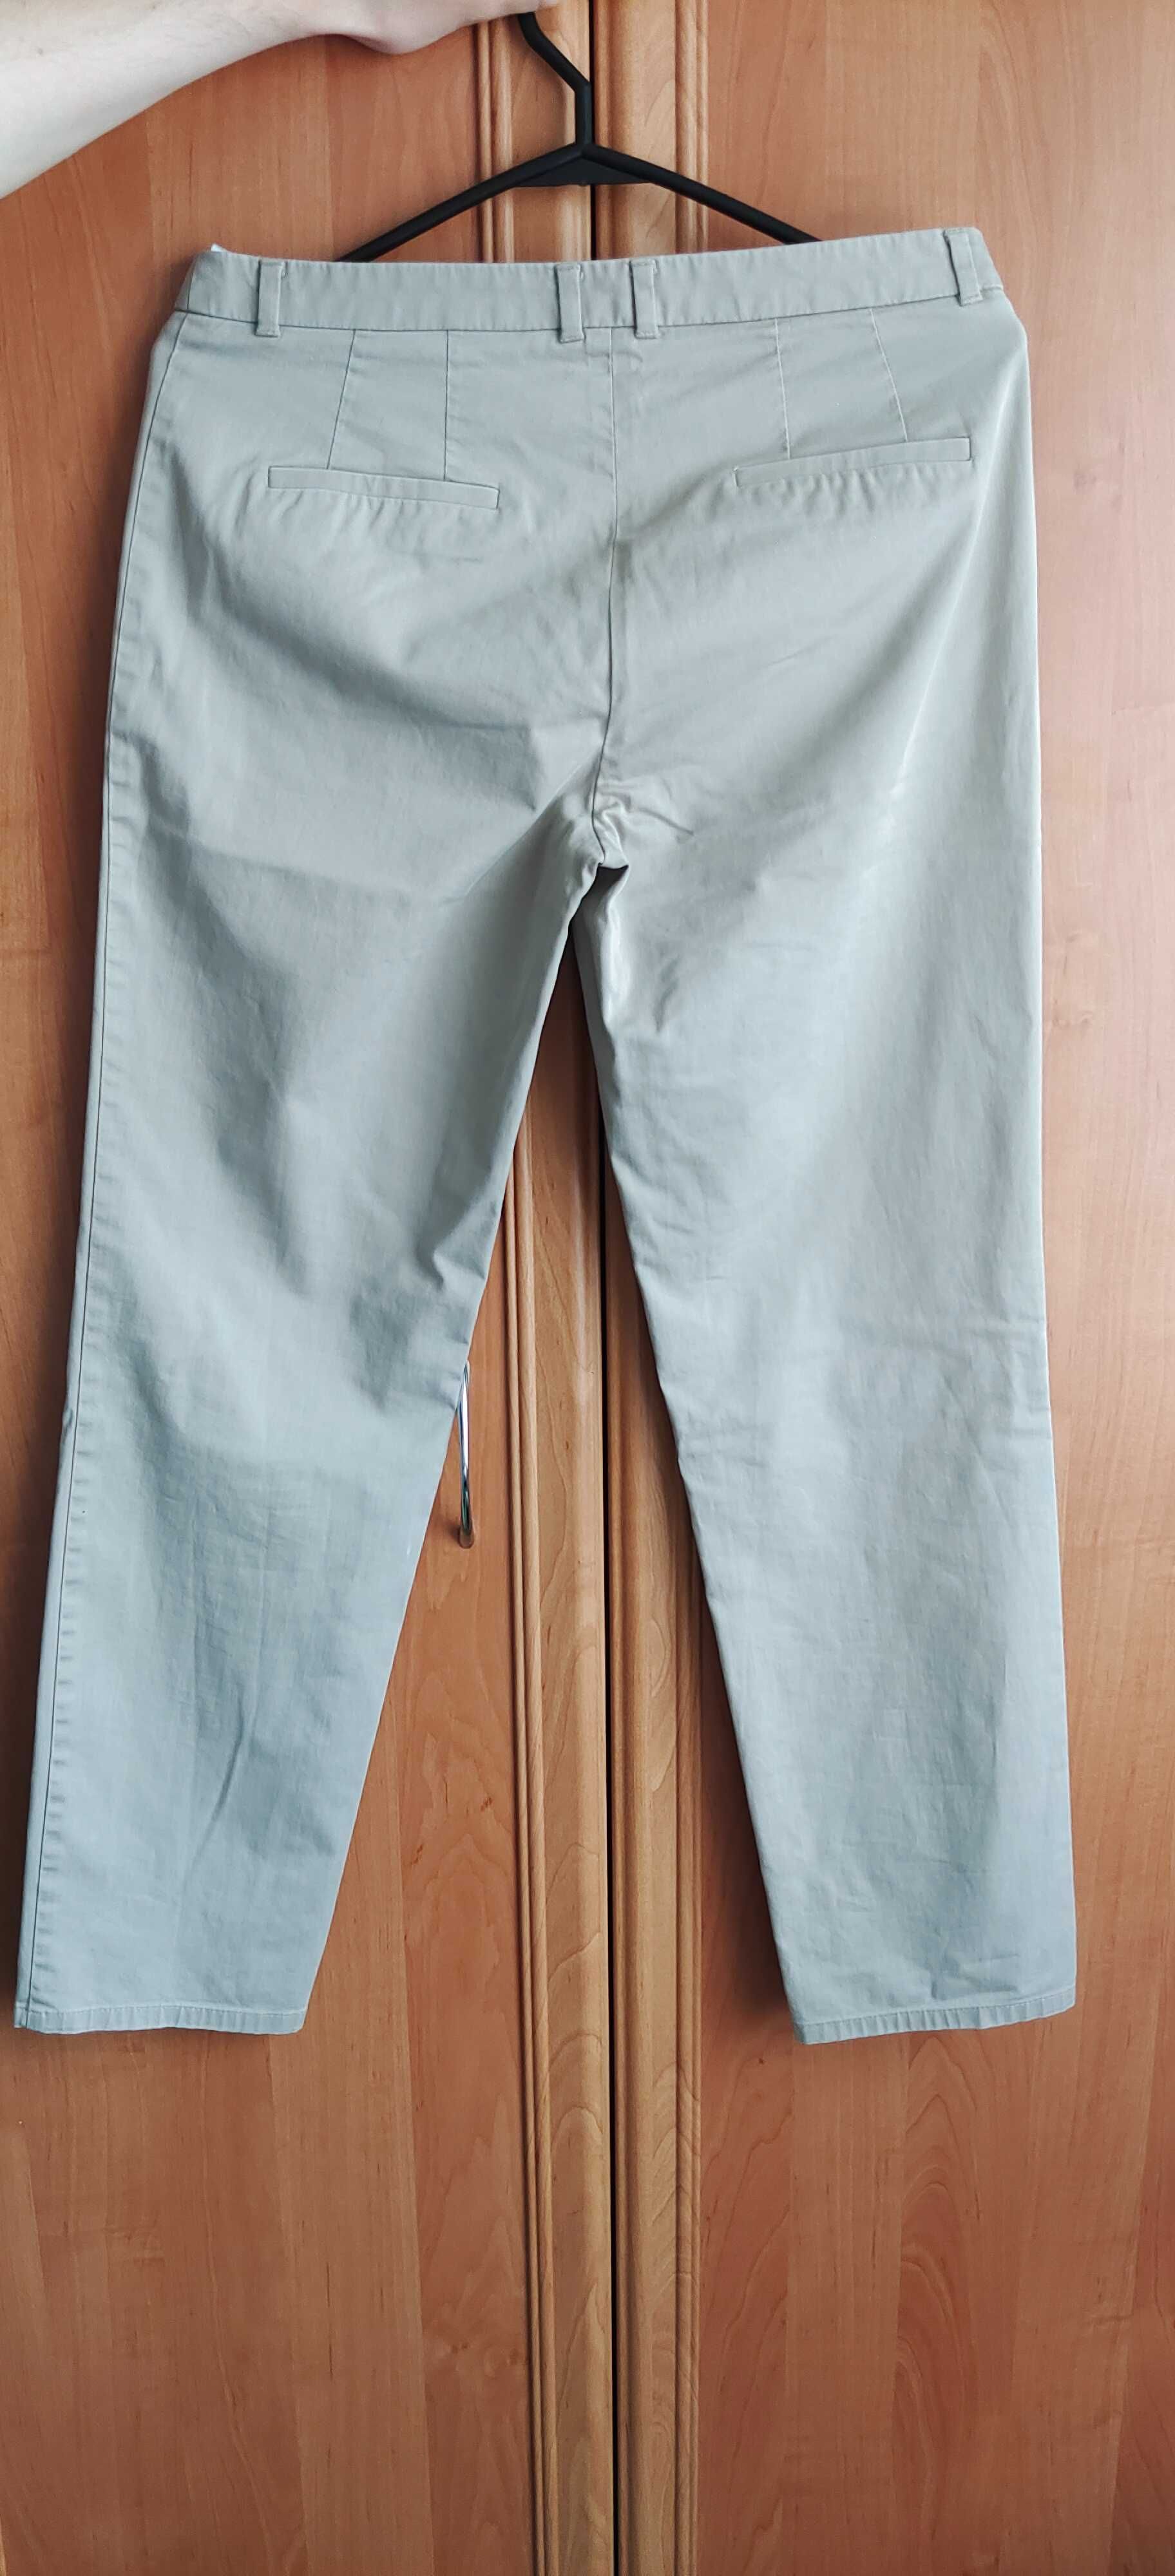 Spodnie materiałowe, Esprit, rozmiar 38